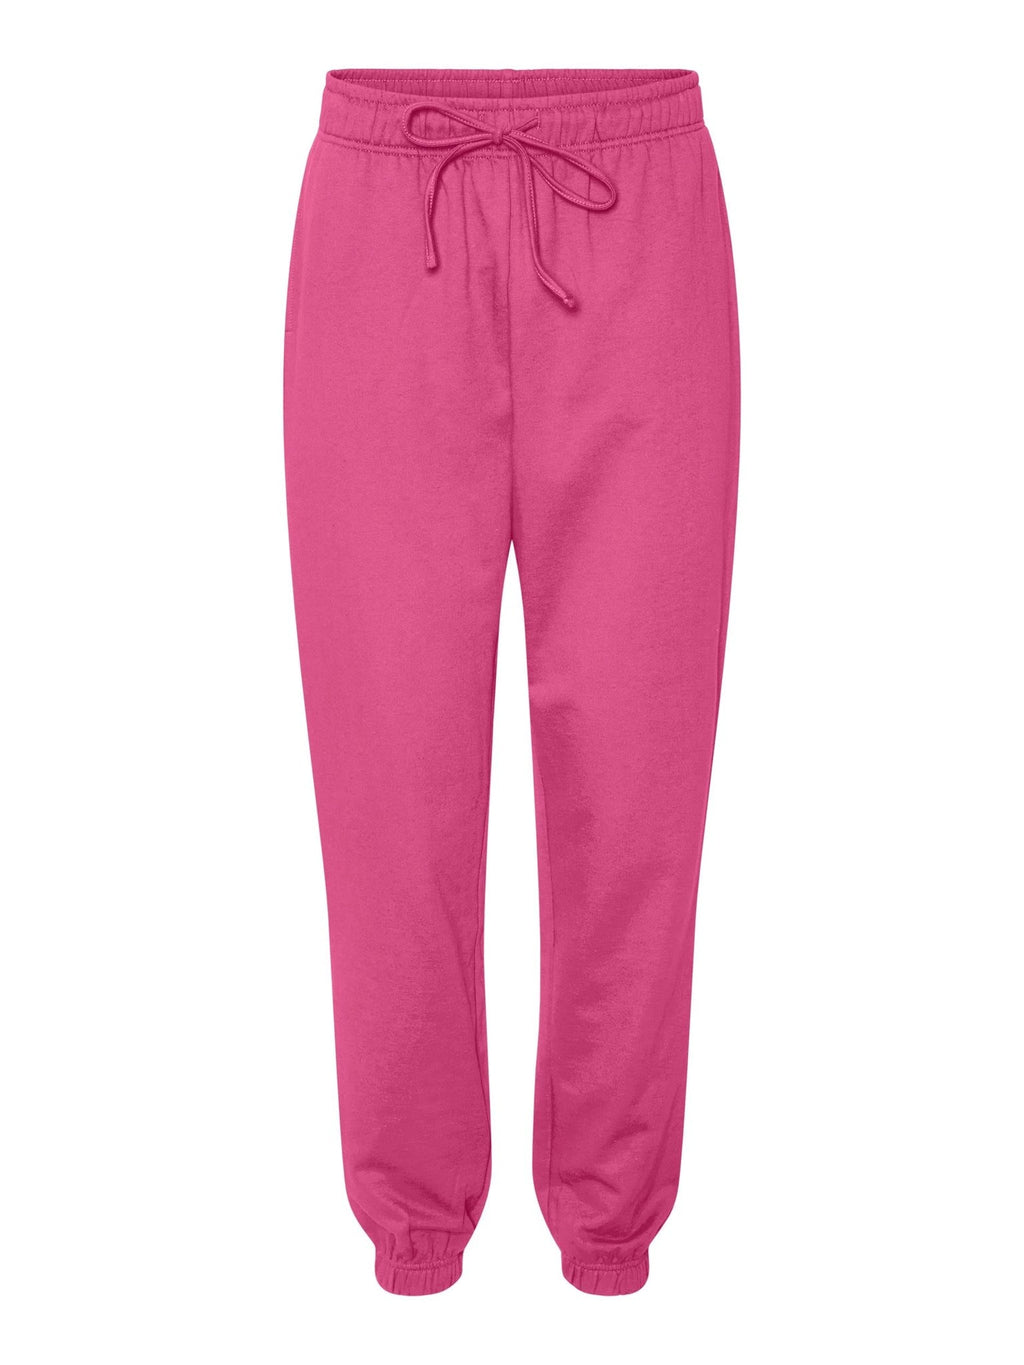 芝加哥汗裤 - 粉红色